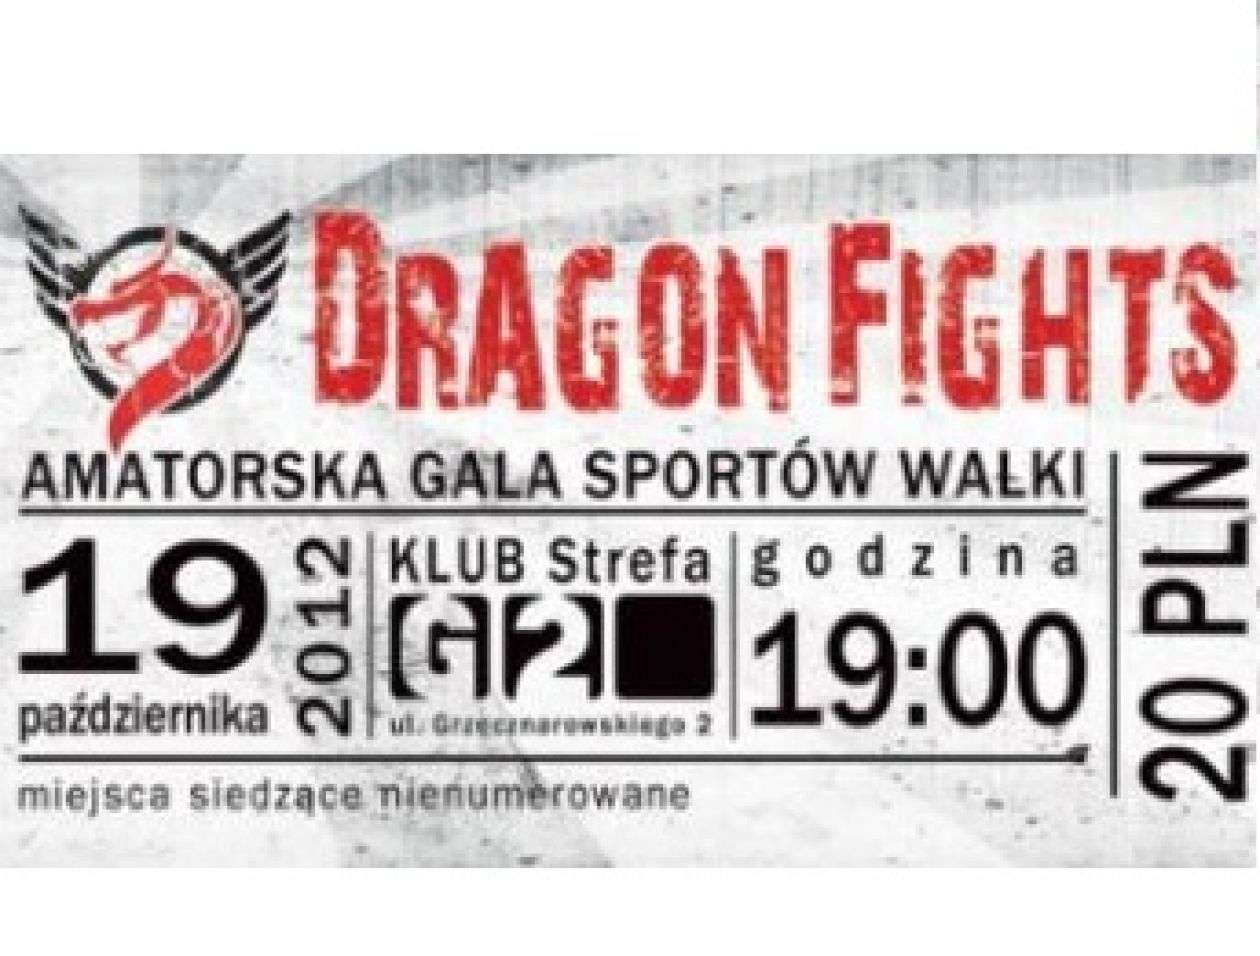 Amatorska Gala Sportów Walki Dragon Fights coraz bliżej